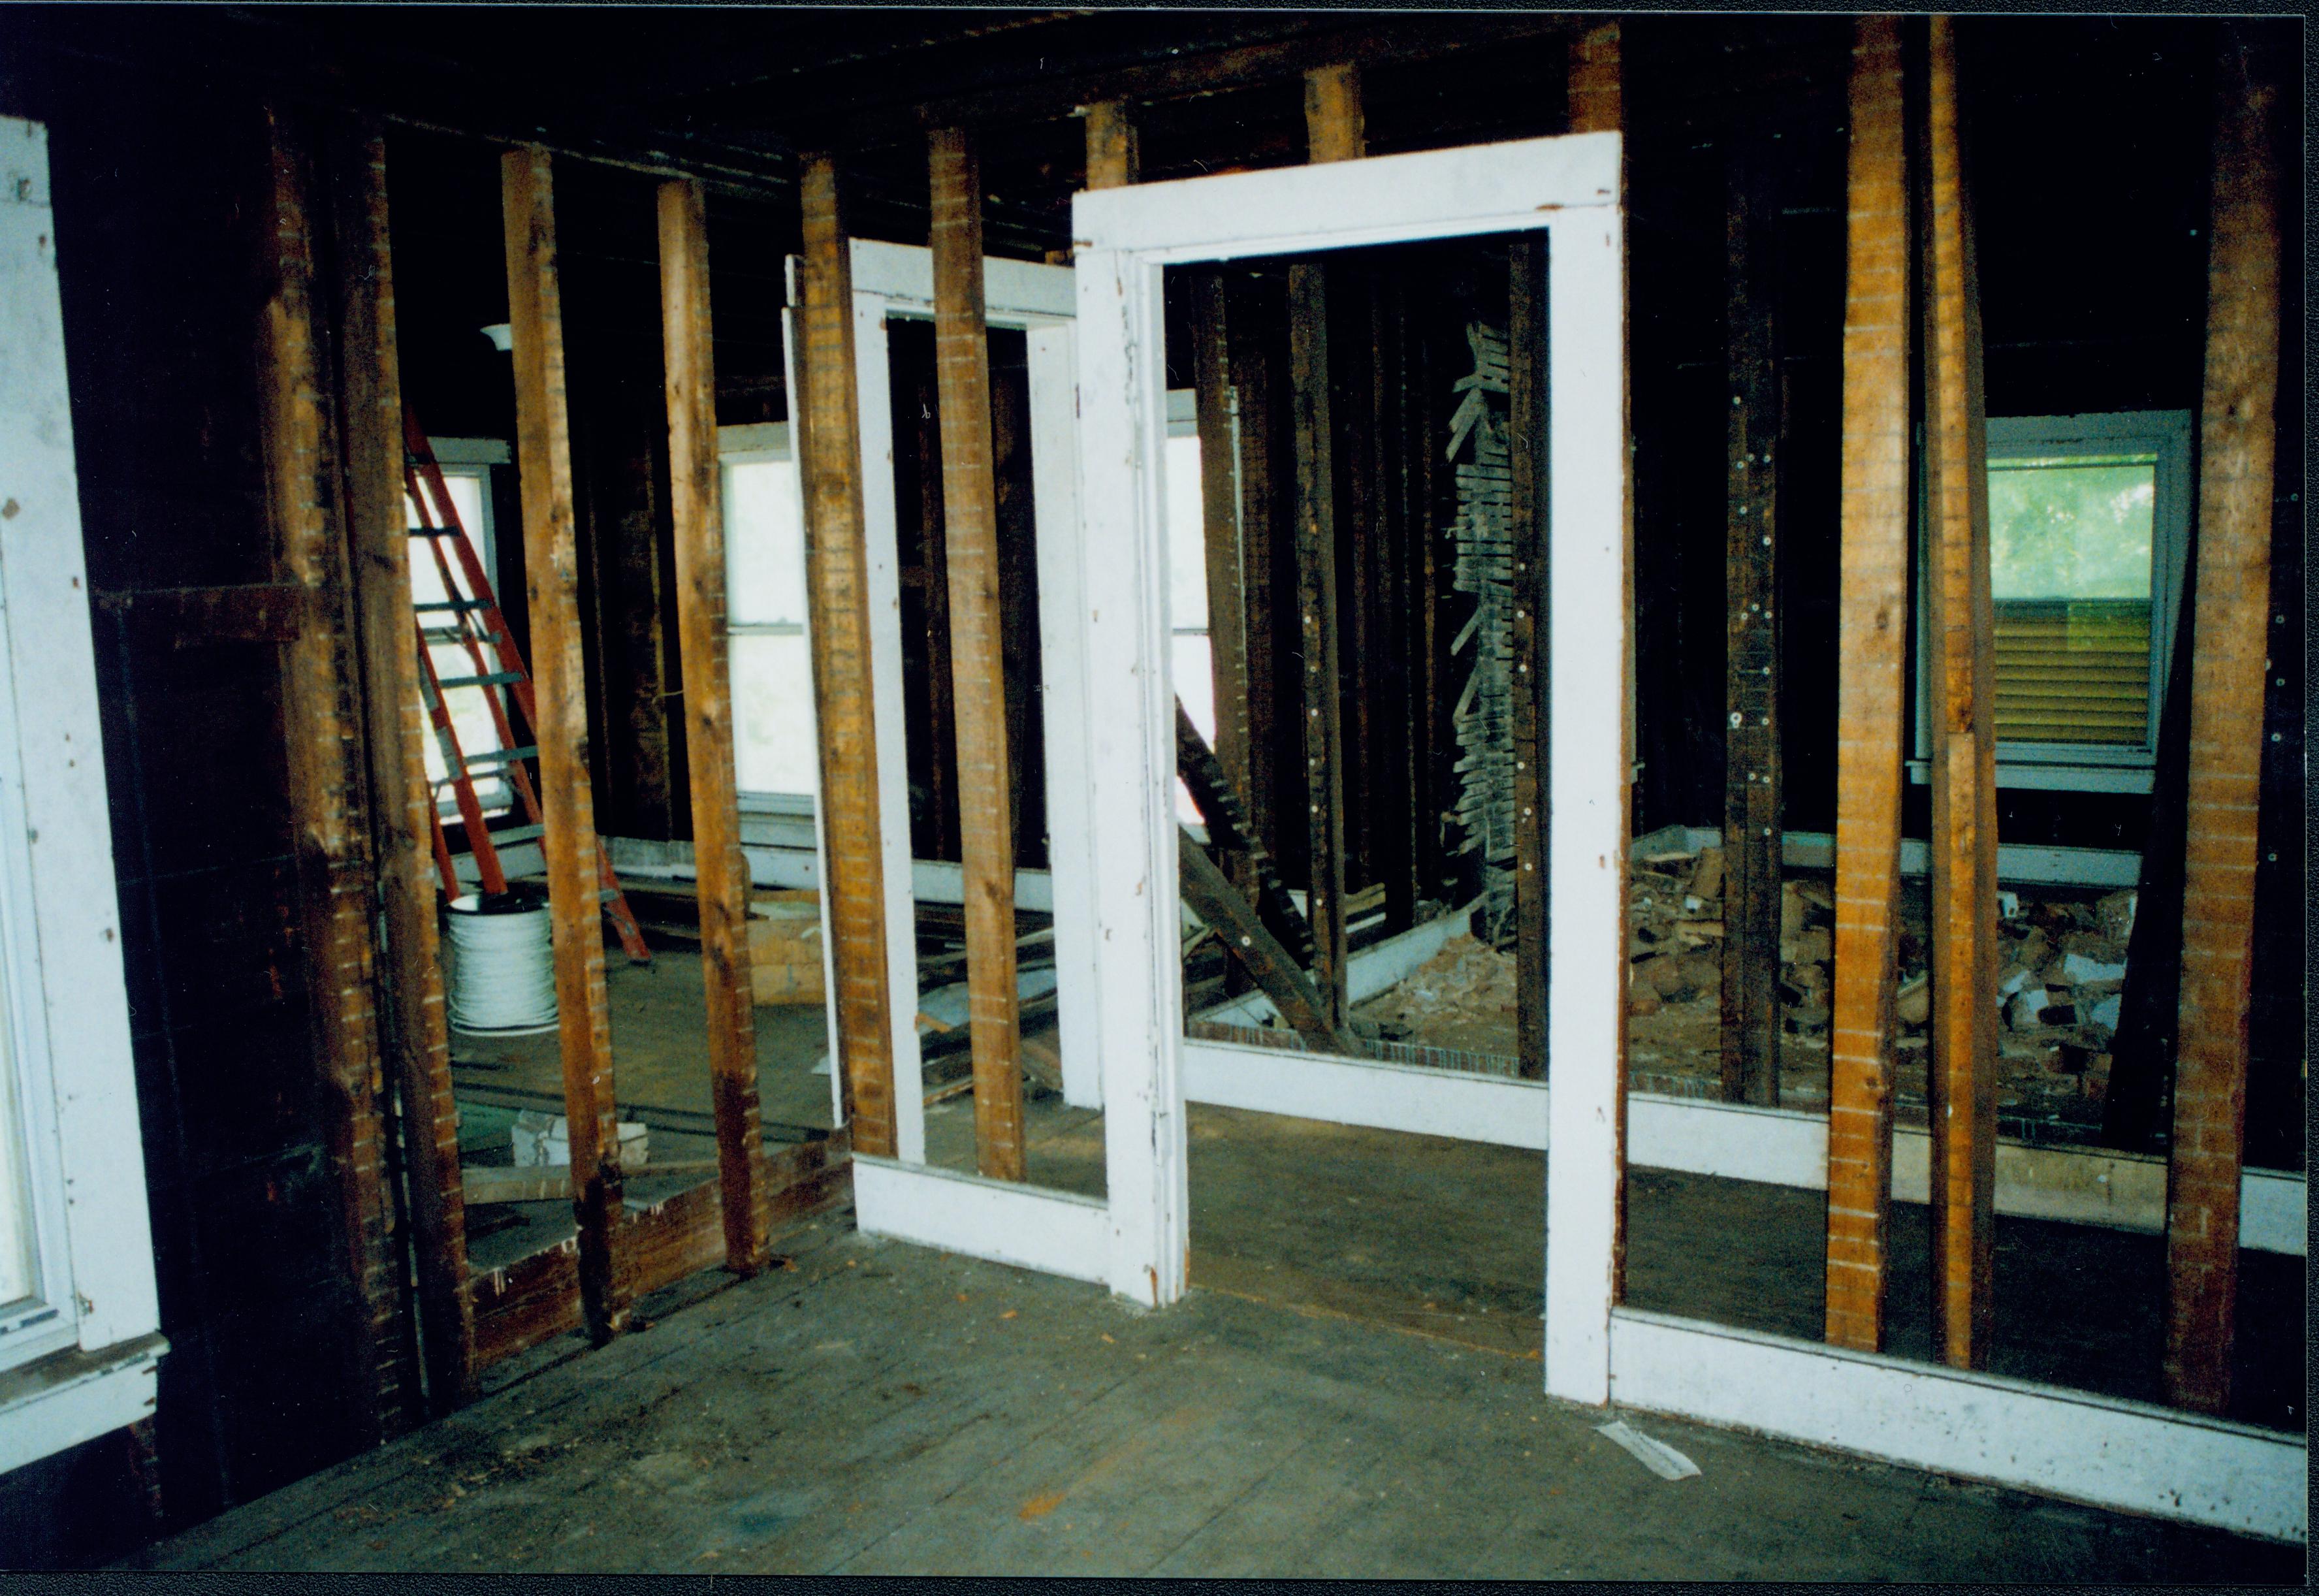 NA 12; 1999-7 Morse House, Interior